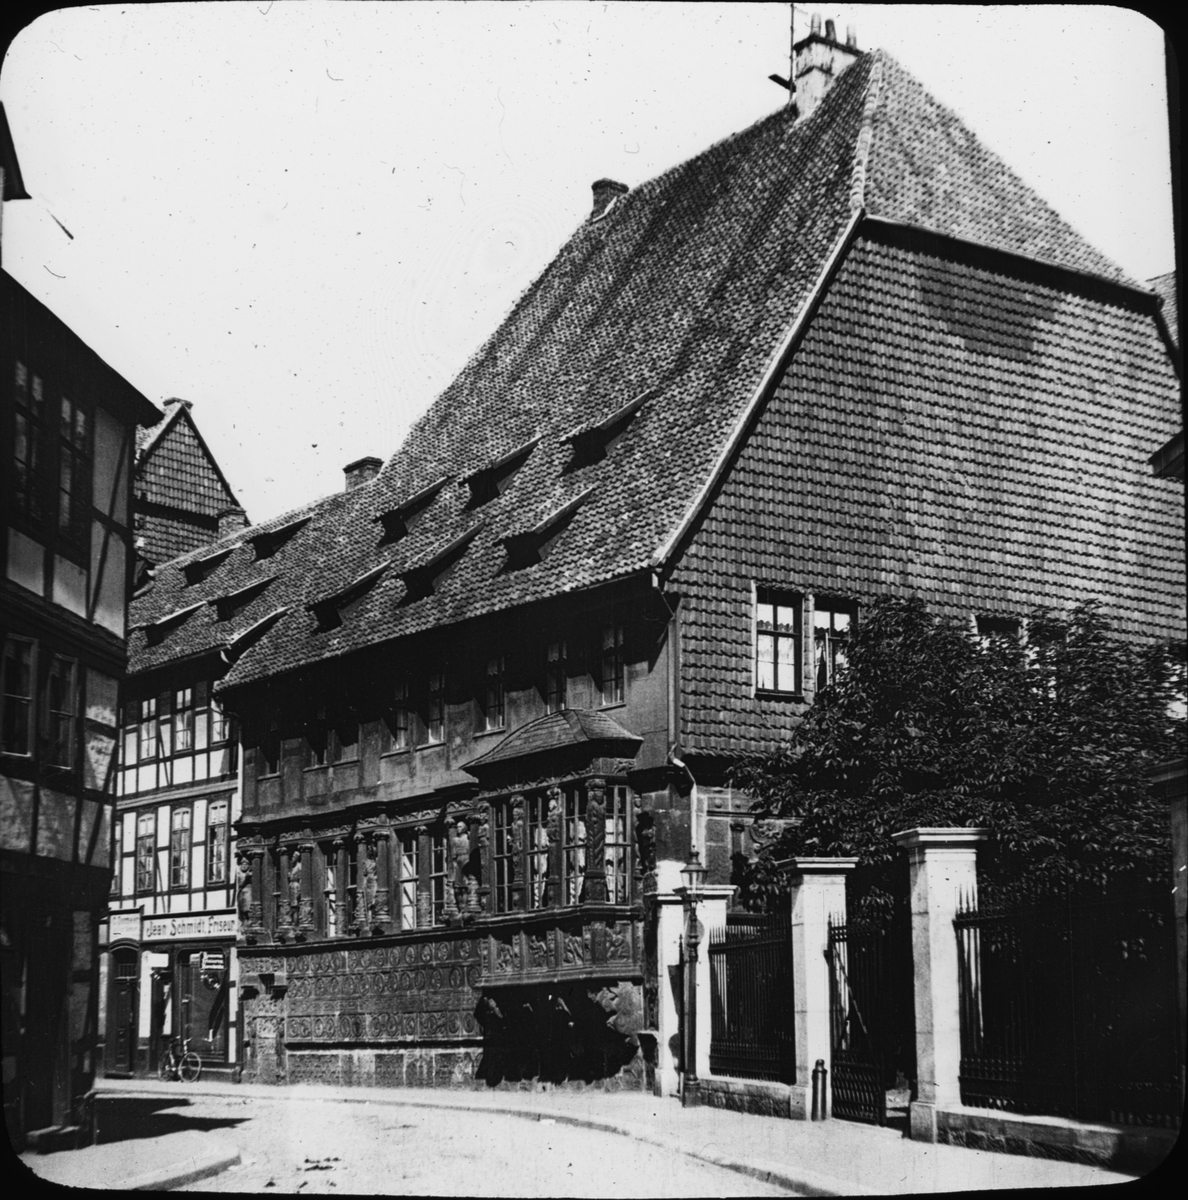 Skioptikonbild med motiv av det Kejserliga huset, Kaiserhaus i Hildesheim.
Bilden har förvarats i kartong märkt: Vårresan 1909. Hildesheim 9. V. Text på bild: "Das Kaiserhaus 1586-81".